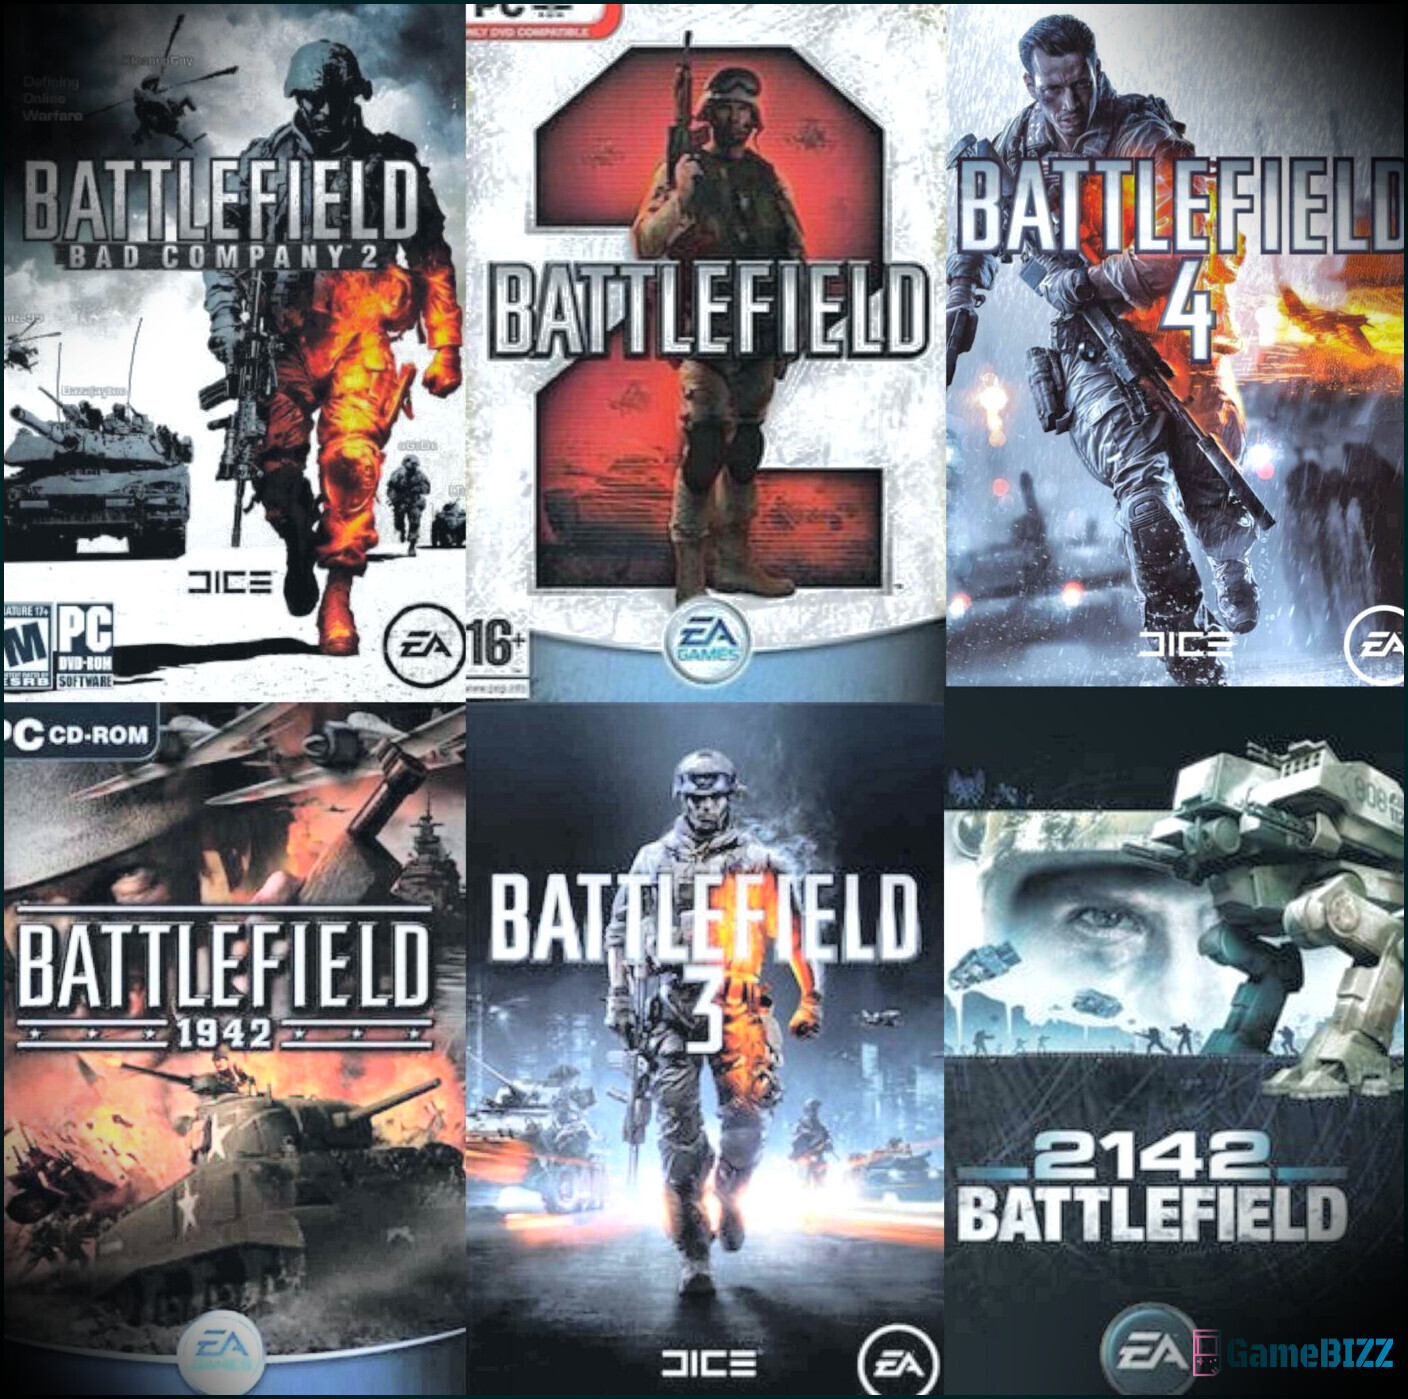 Kaufen Sie diese drei Battlefield-Spiele, bevor sie'am 31. Juli ausgelistet werden